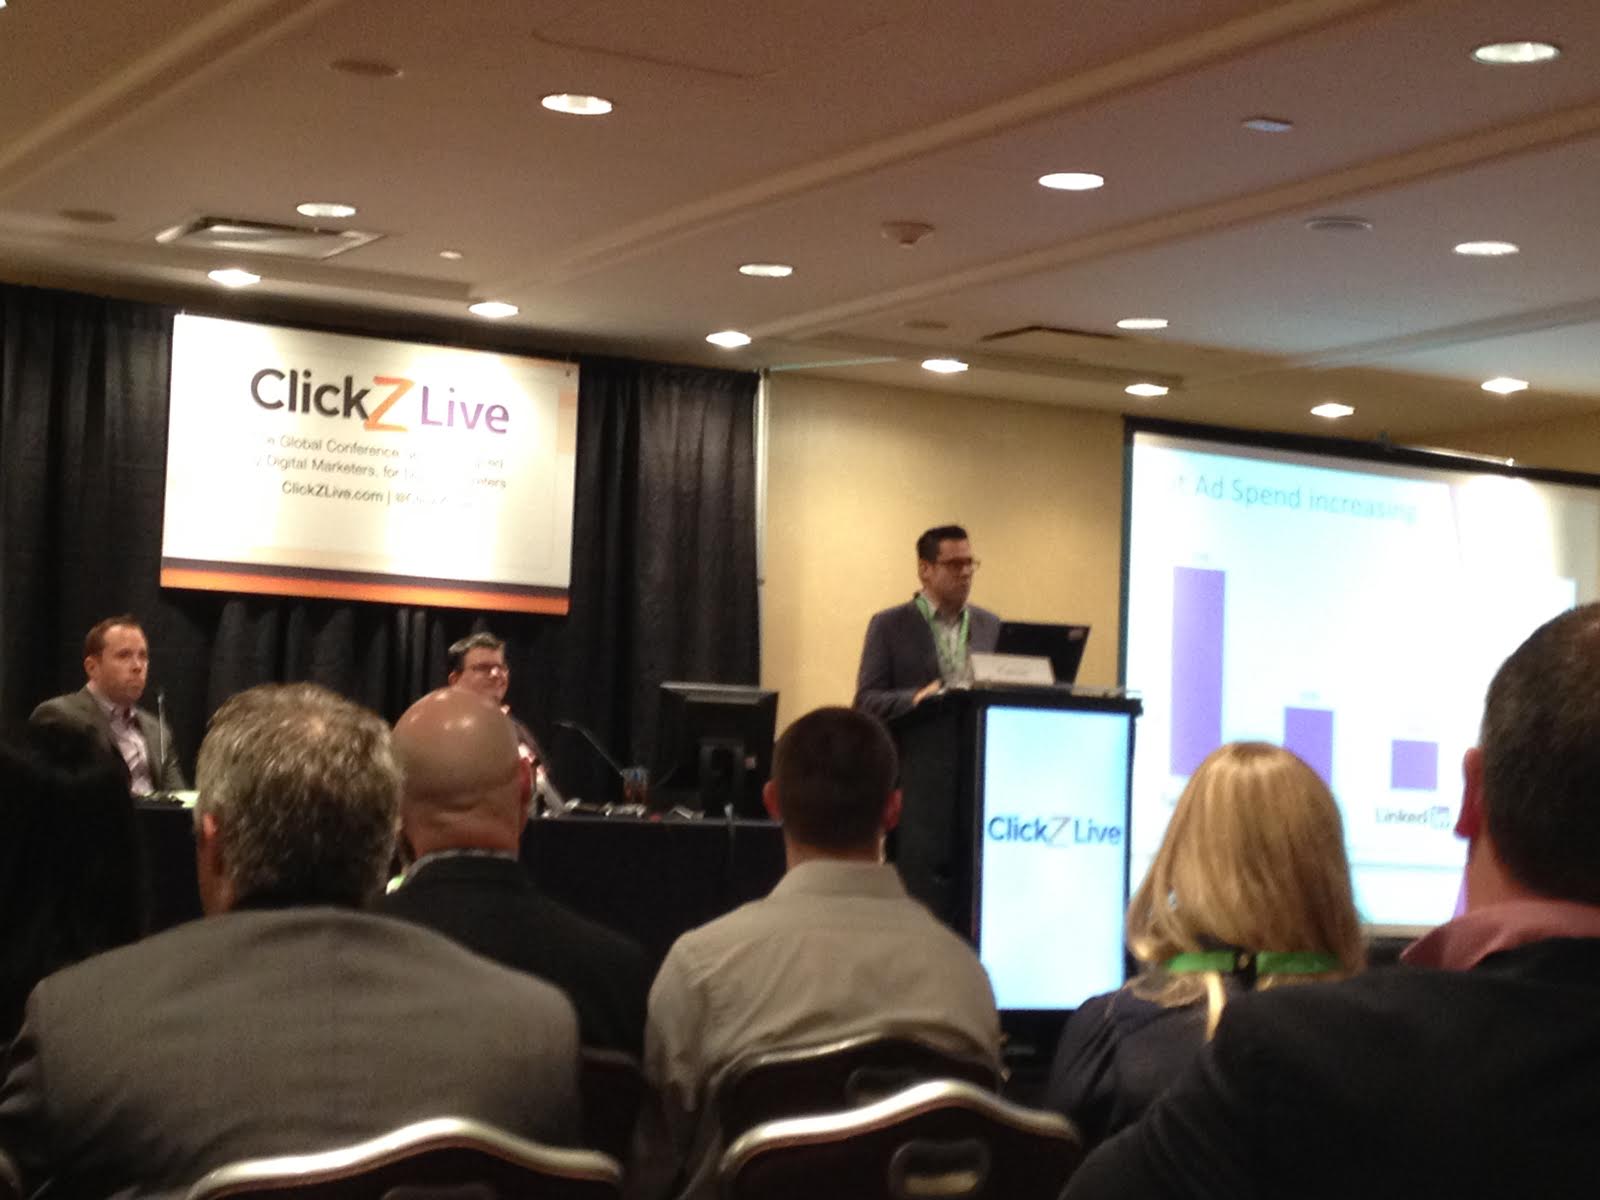 ClickZ Live NY Social Marketing presentation